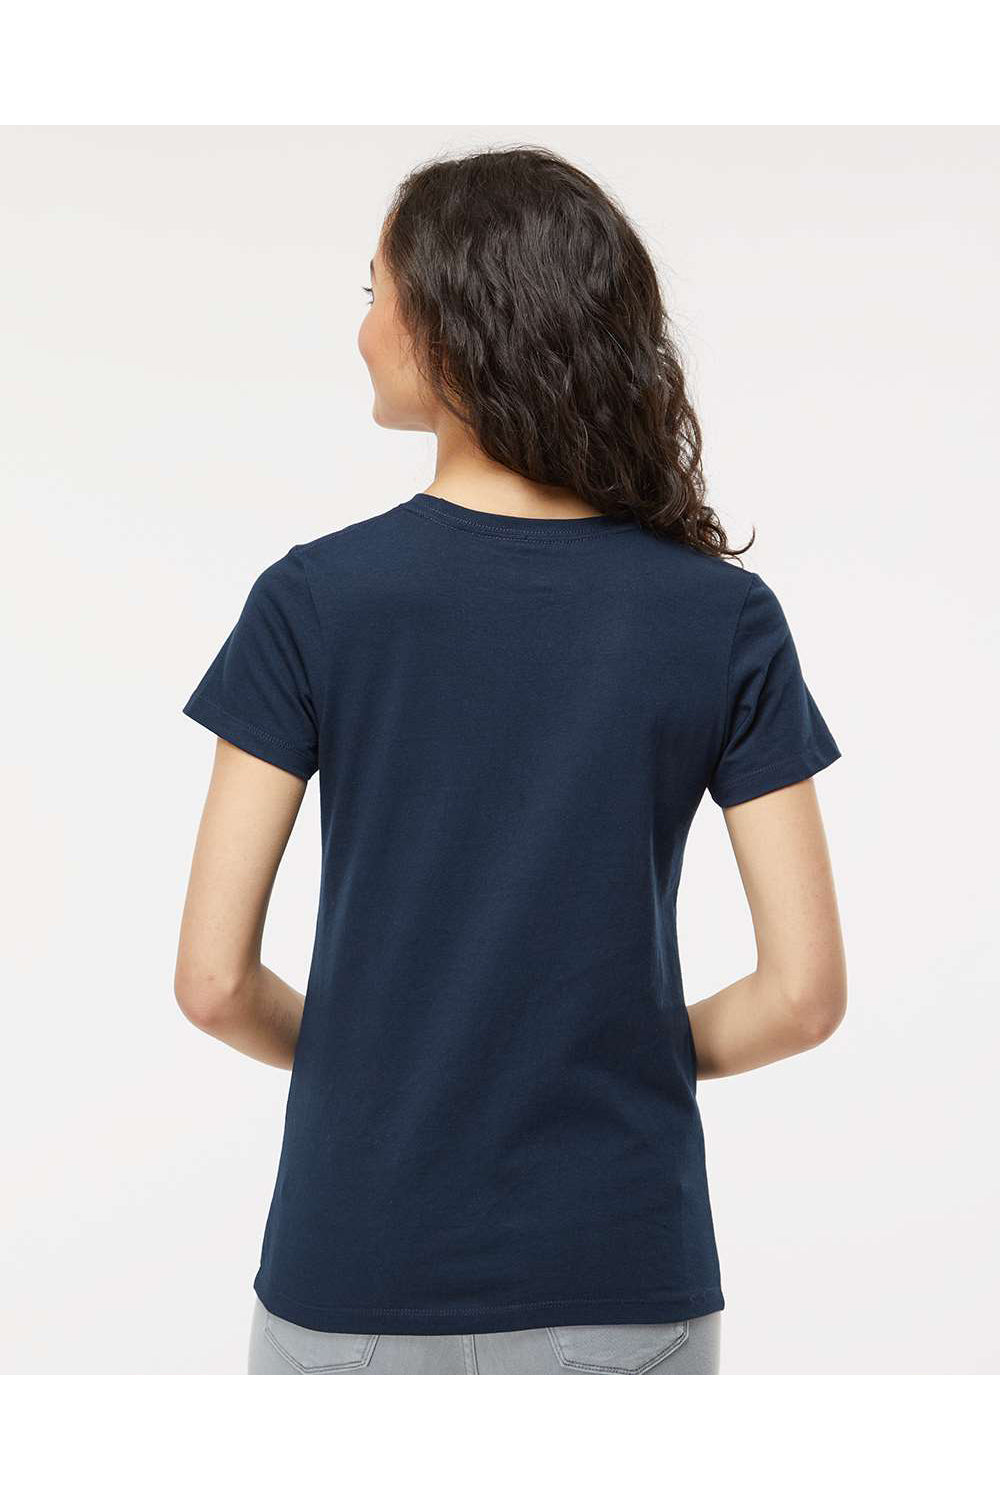 M&O 4810 Womens Gold Soft Touch Short Sleeve Crewneck T-Shirt Deep Navy Blue Model Back